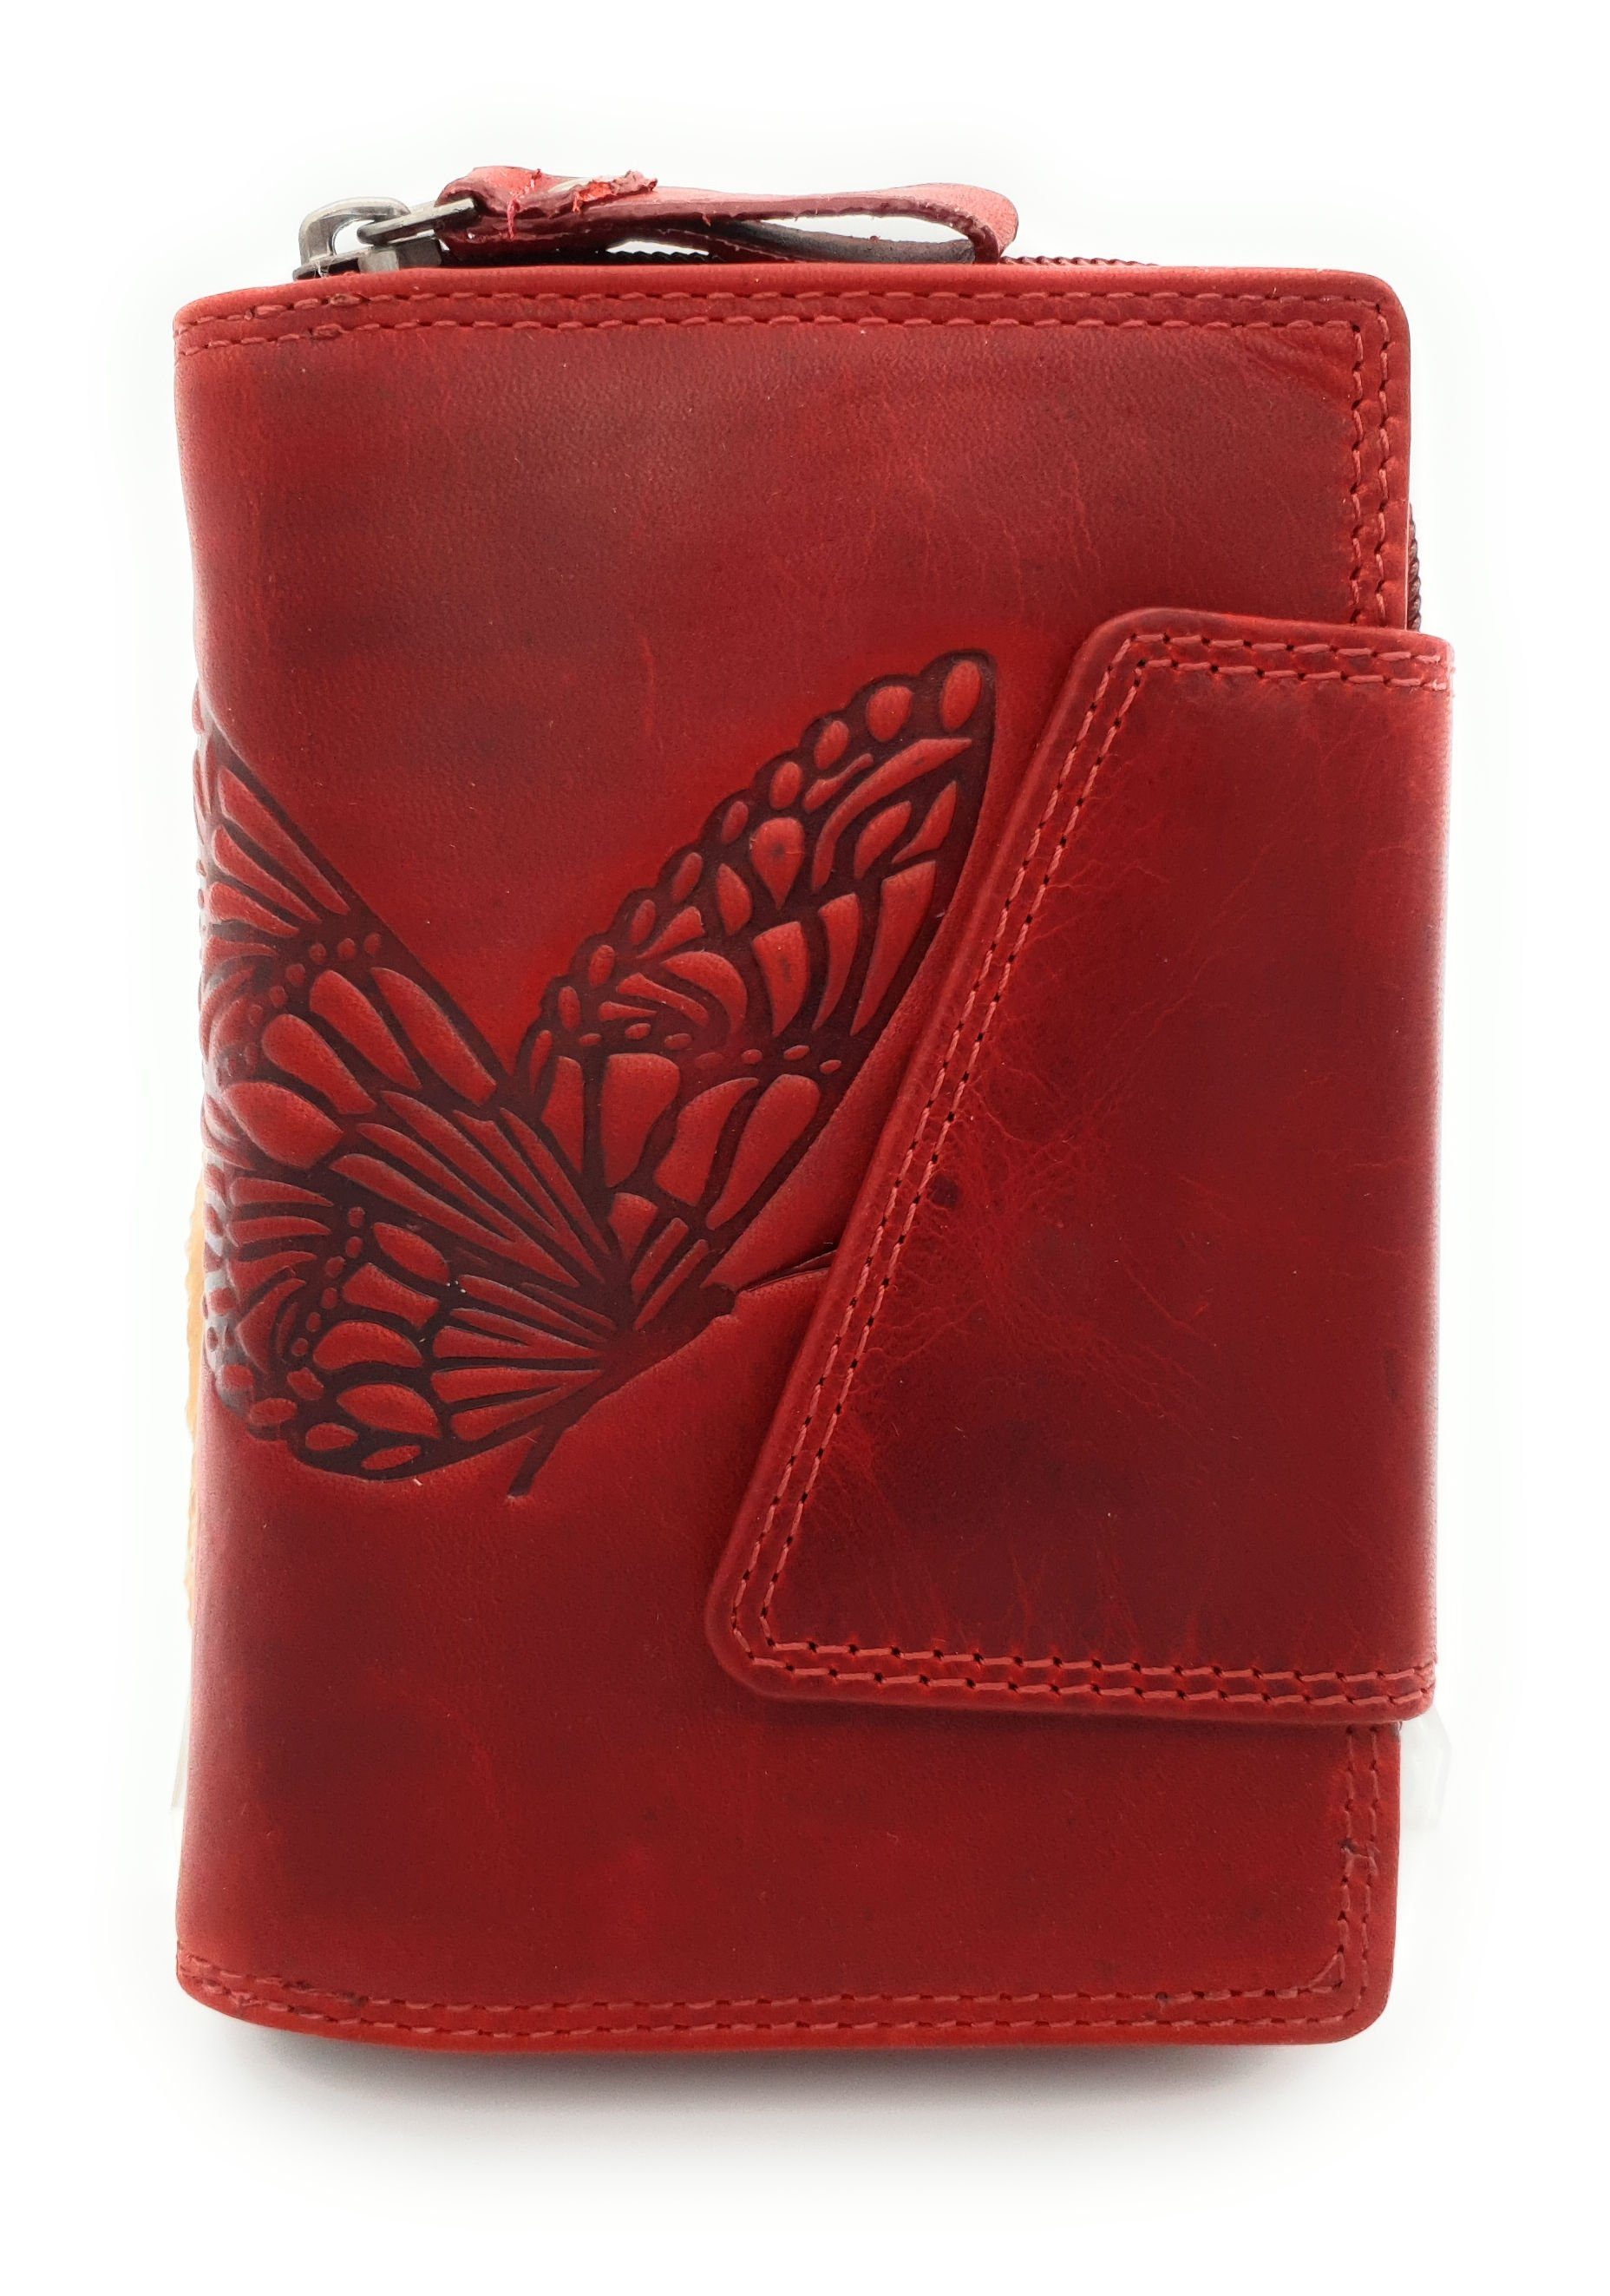 JOCKEY CLUB Geldbörse echt Leder Damen Portemonnaie mit RFID Schutz Schmetterling, Sauvage-Vollrindleder, 14 Kartenfächer, tolle Haptik